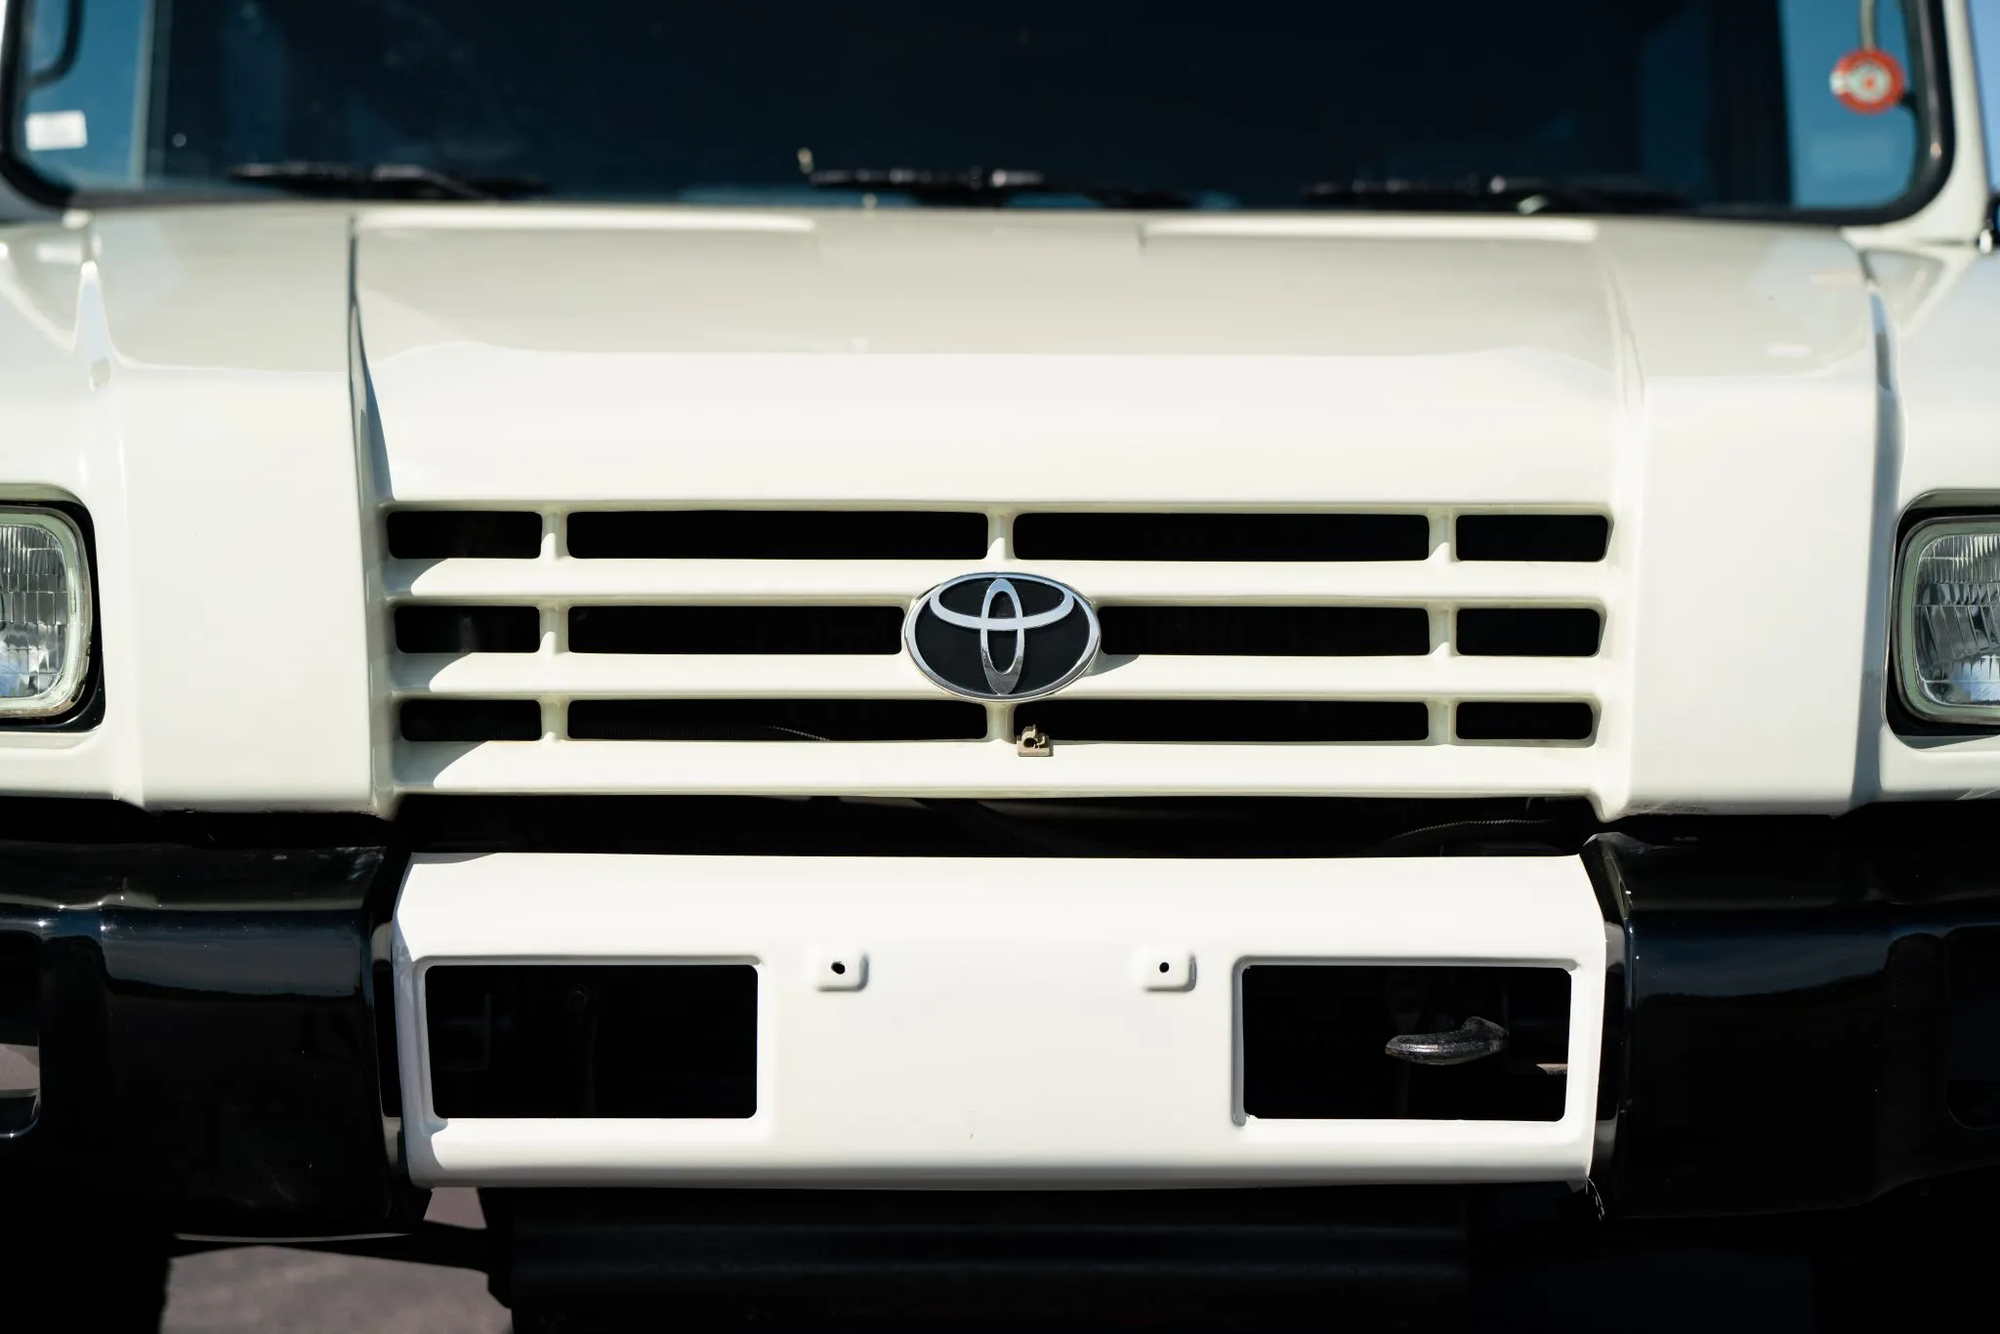 Xe Toyota không phải ai cũng biết: Trông như Hummer, ăn dầu như uống nước lã nhưng được săn lùng gắt gao - Ảnh 14.